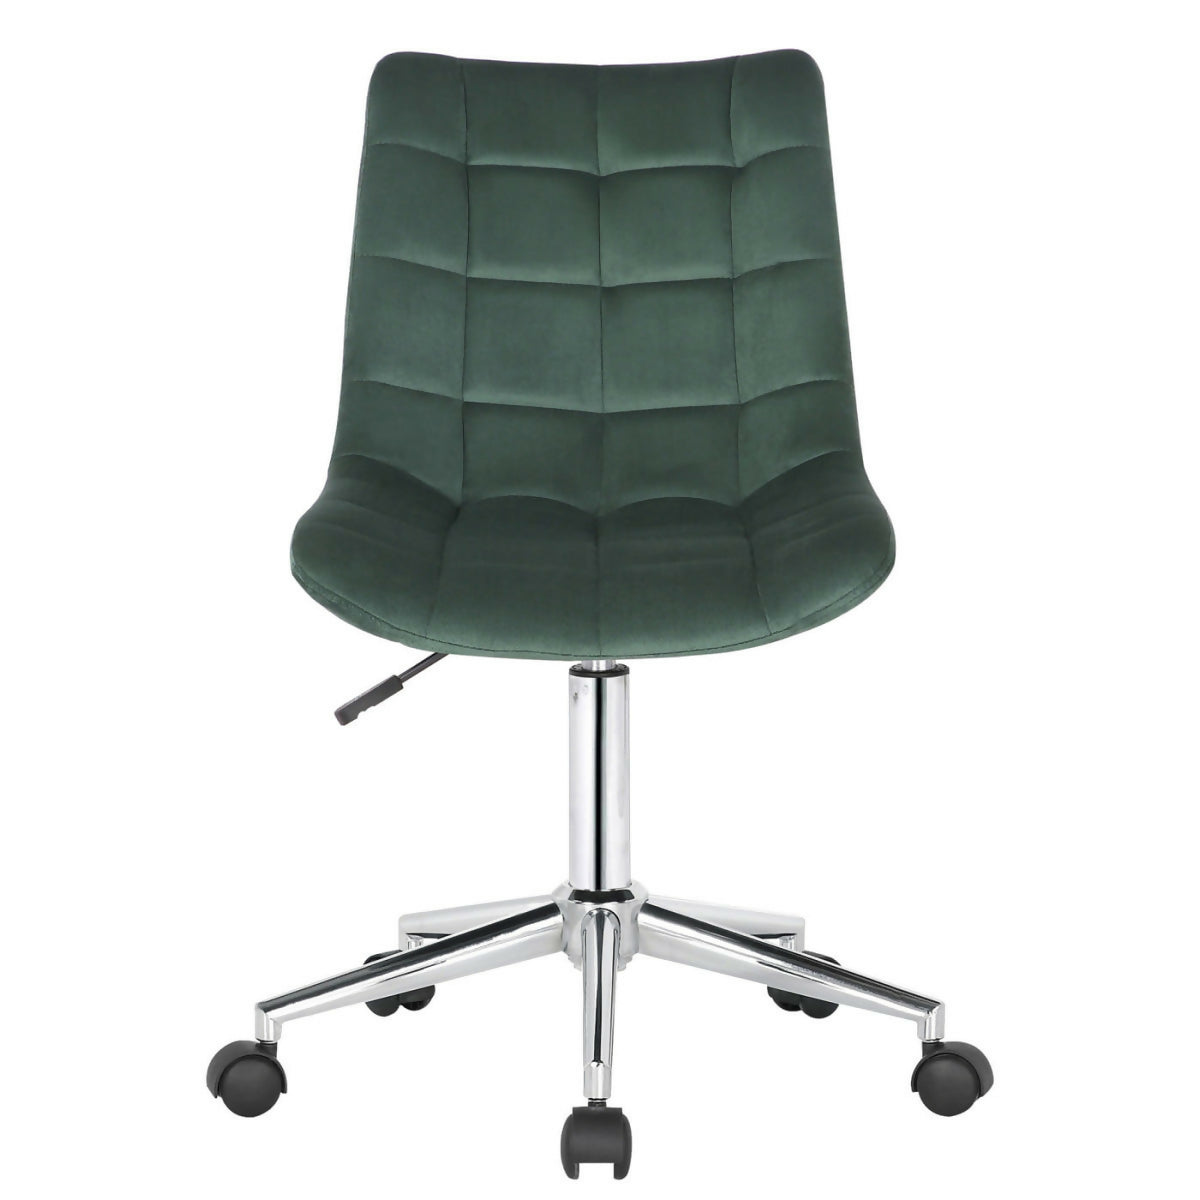 Medford office chair - Green velvet - 0